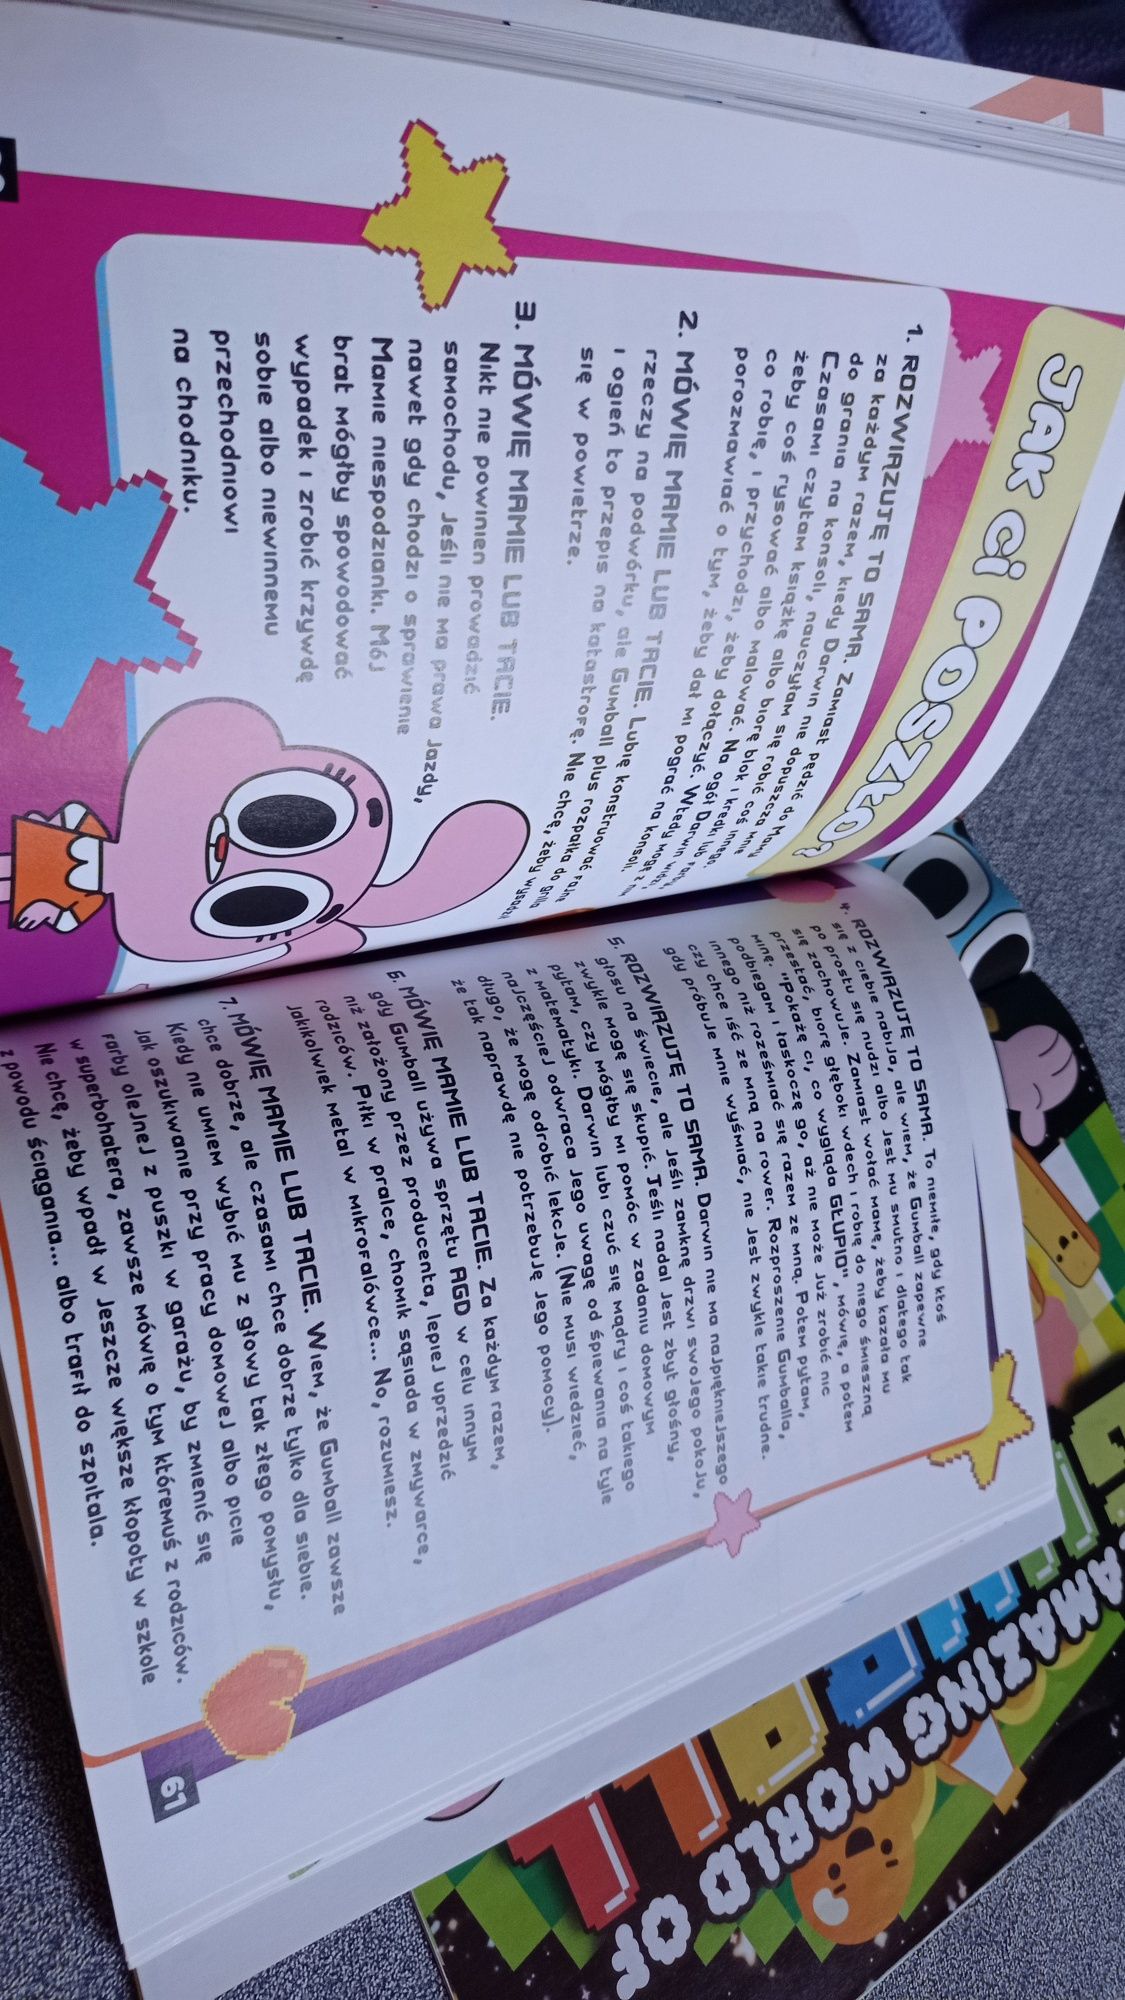 CN Niesamowity Świat Gumballa - Super książka + magazyn z komiksami